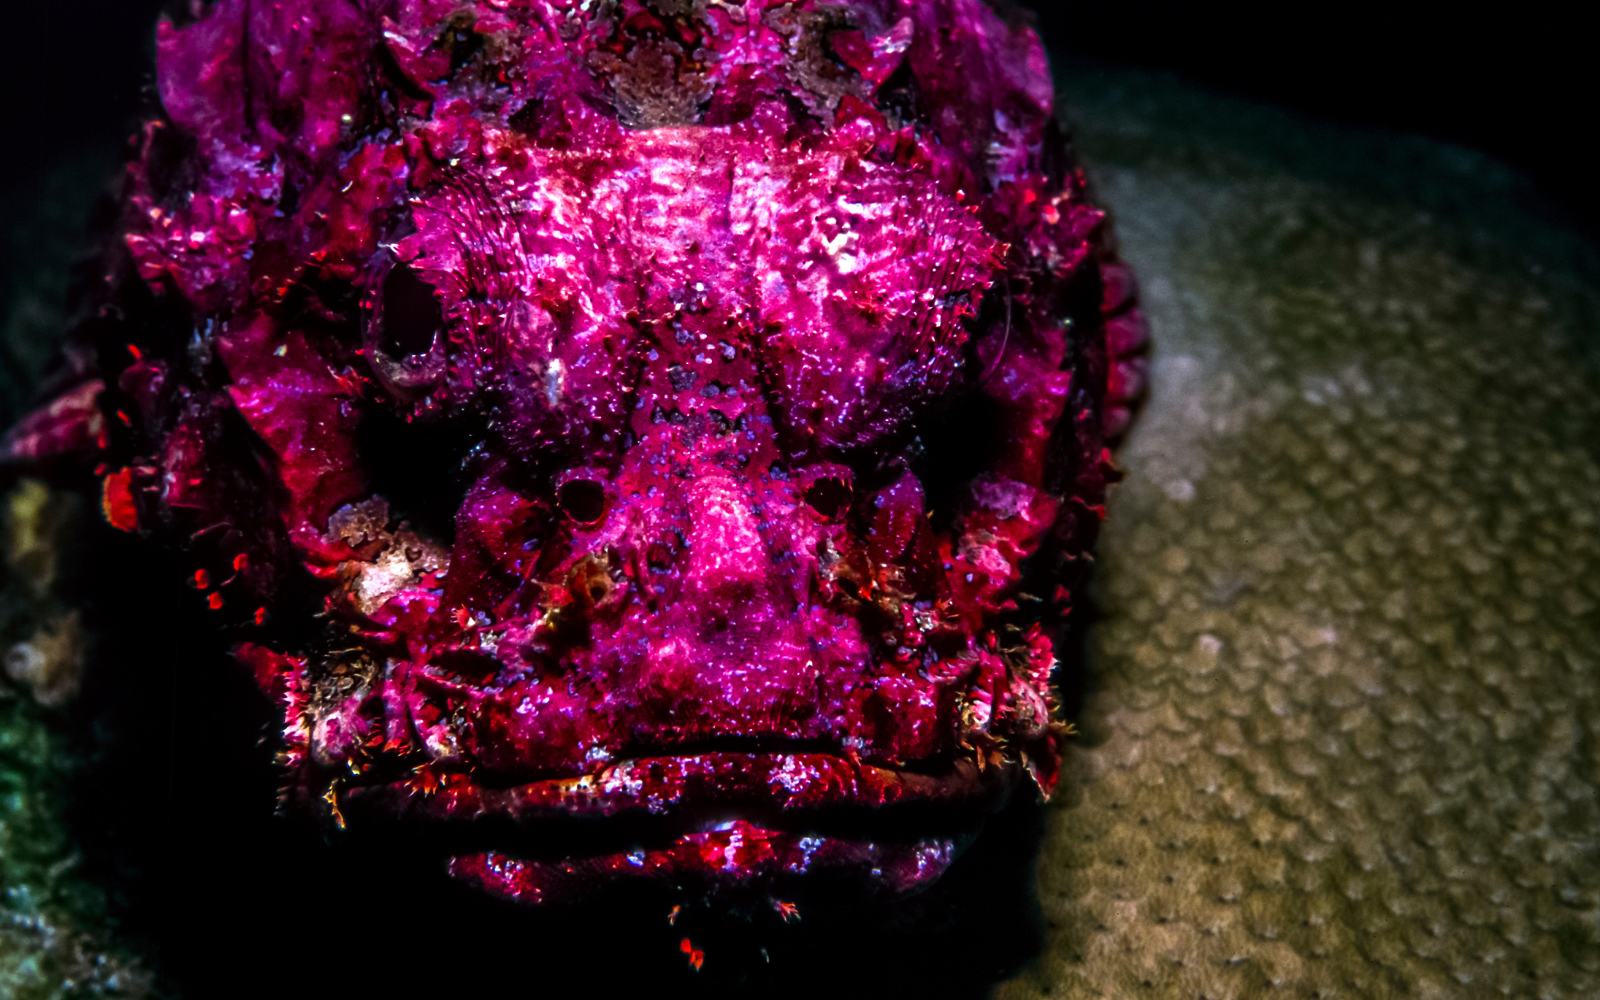 Cá mặt quỷ - Tinh túy từ đại dương có vẻ ngoài thô kệch nhưng không che lấp nổi vị thịt ngọt thơm bên trong - Ảnh 1.